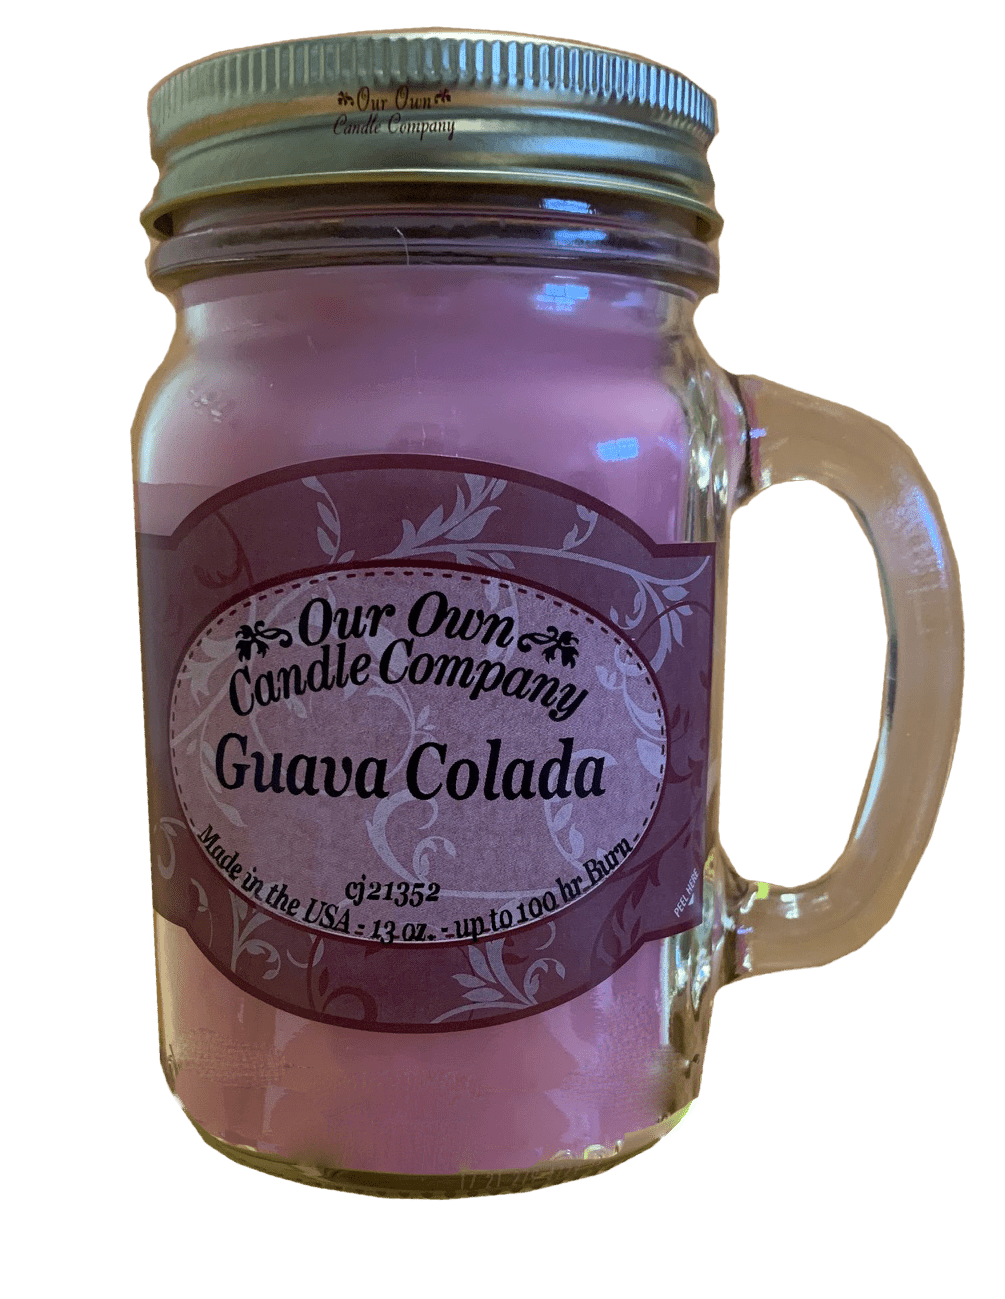 Our Own Candle Company 13 oz Mason Jar Candle - Guava Colada